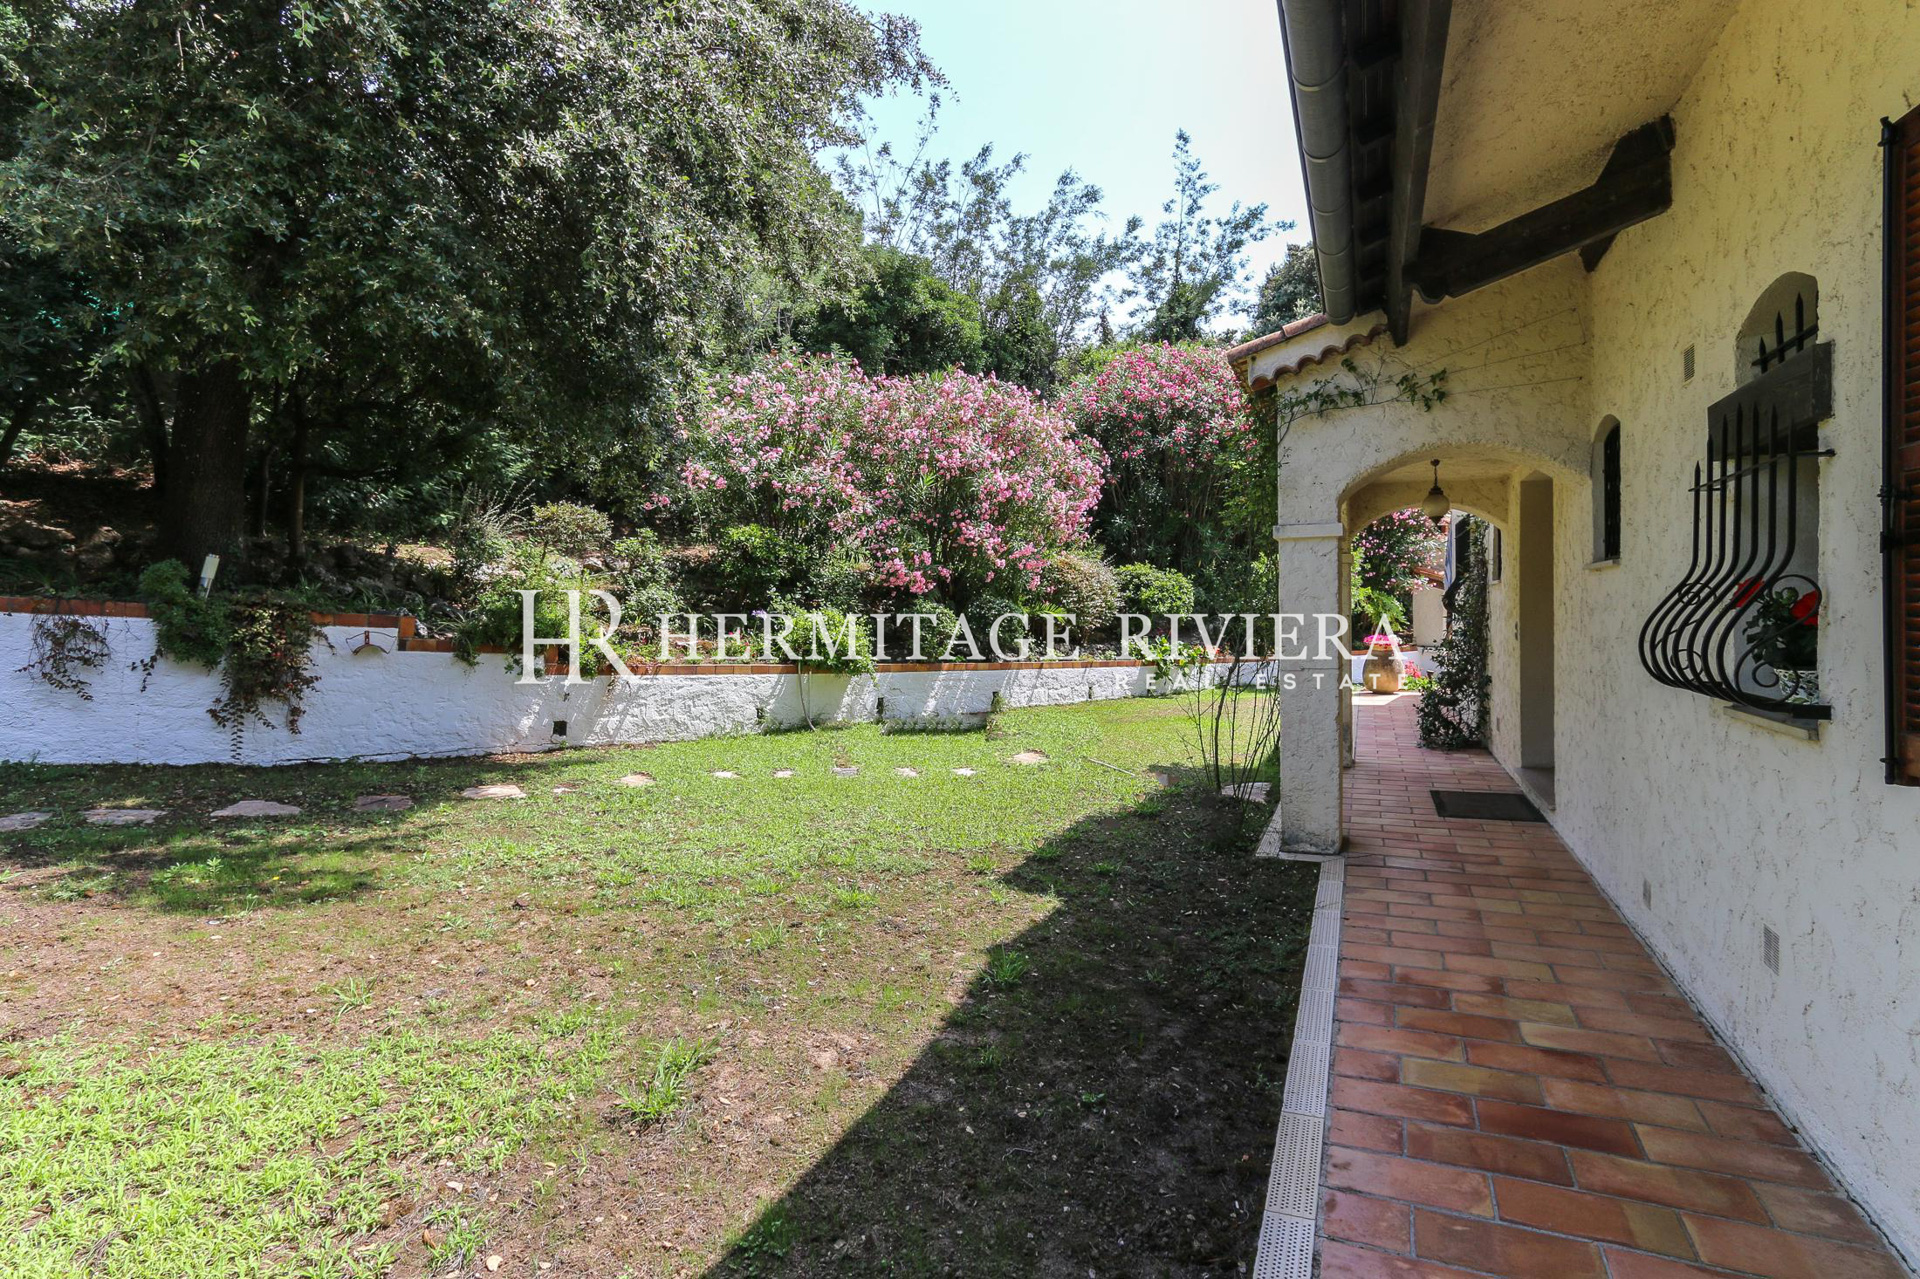 Provençal style villa in calm location (image 19)